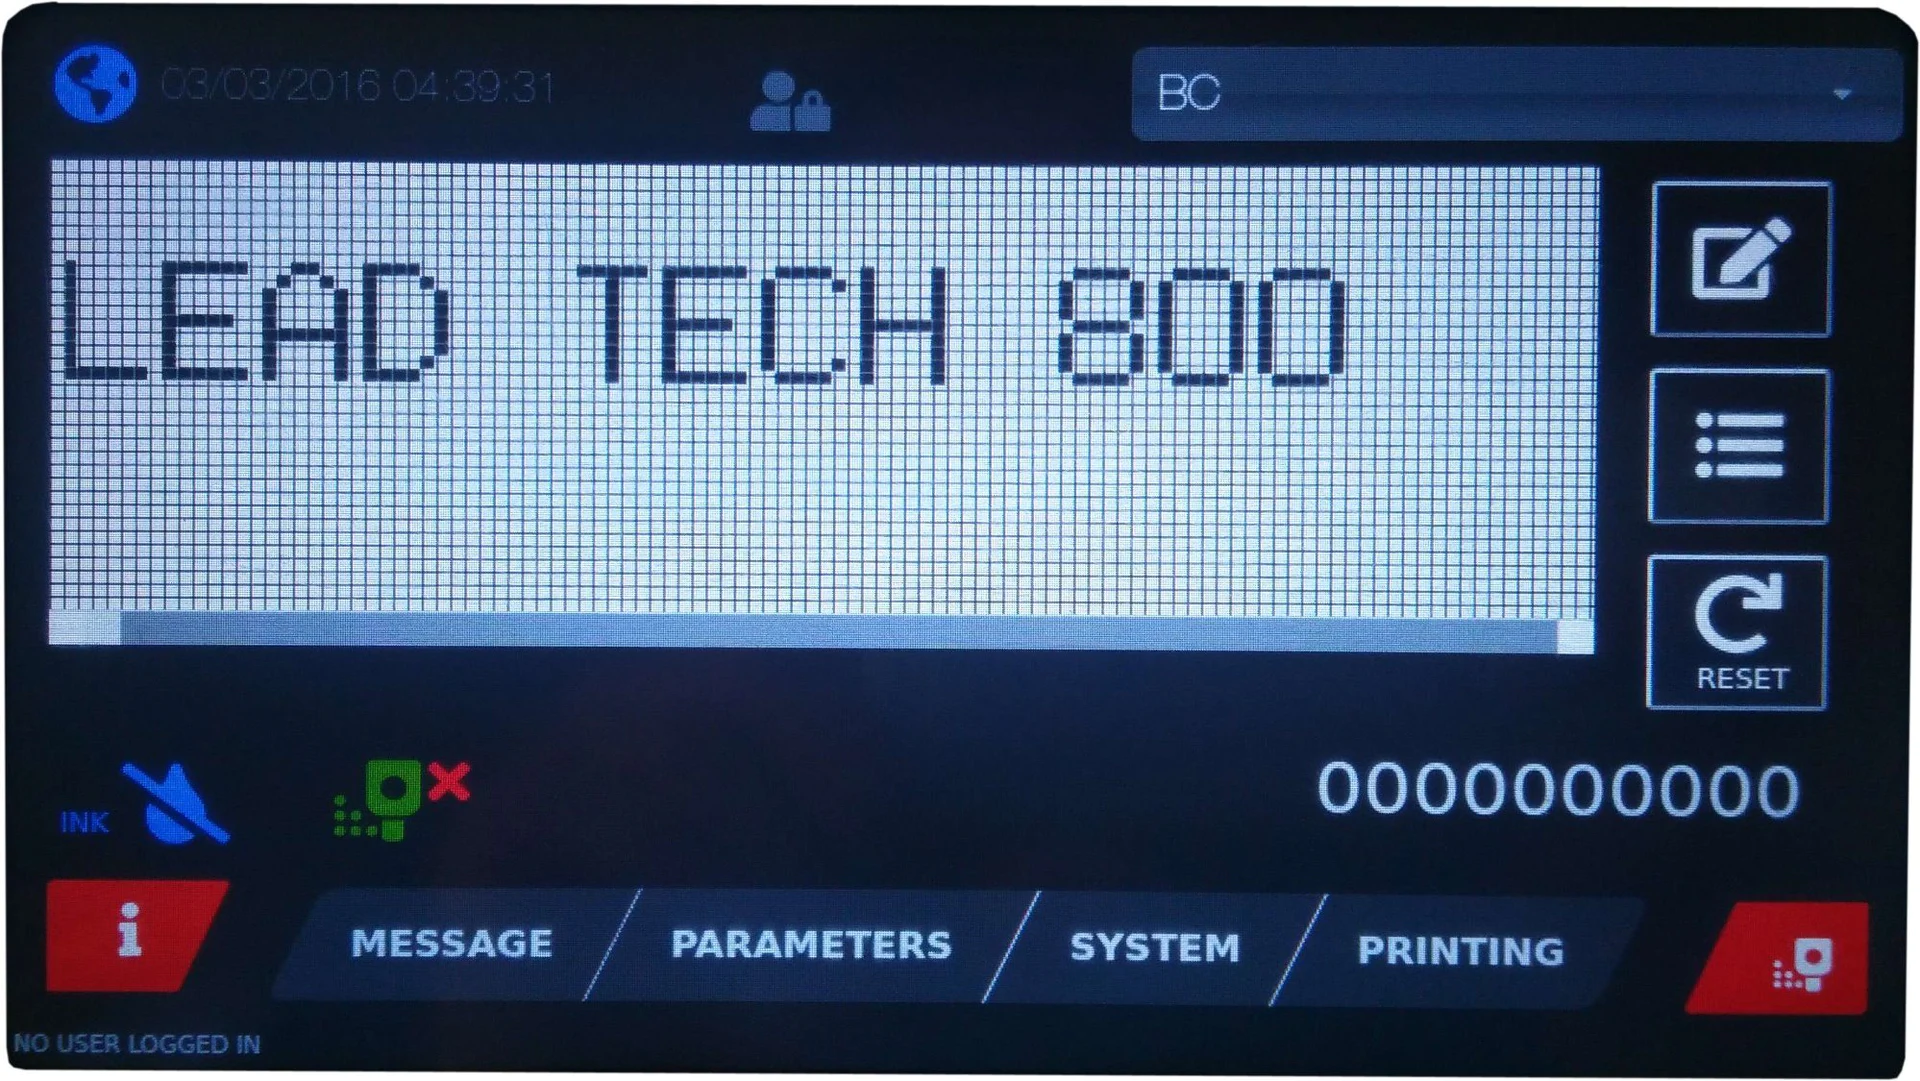 Lead Tech Lt800 Touch Screen Laser Marking Machine Coding Machine Cij Inkjet Printer Printing Machine